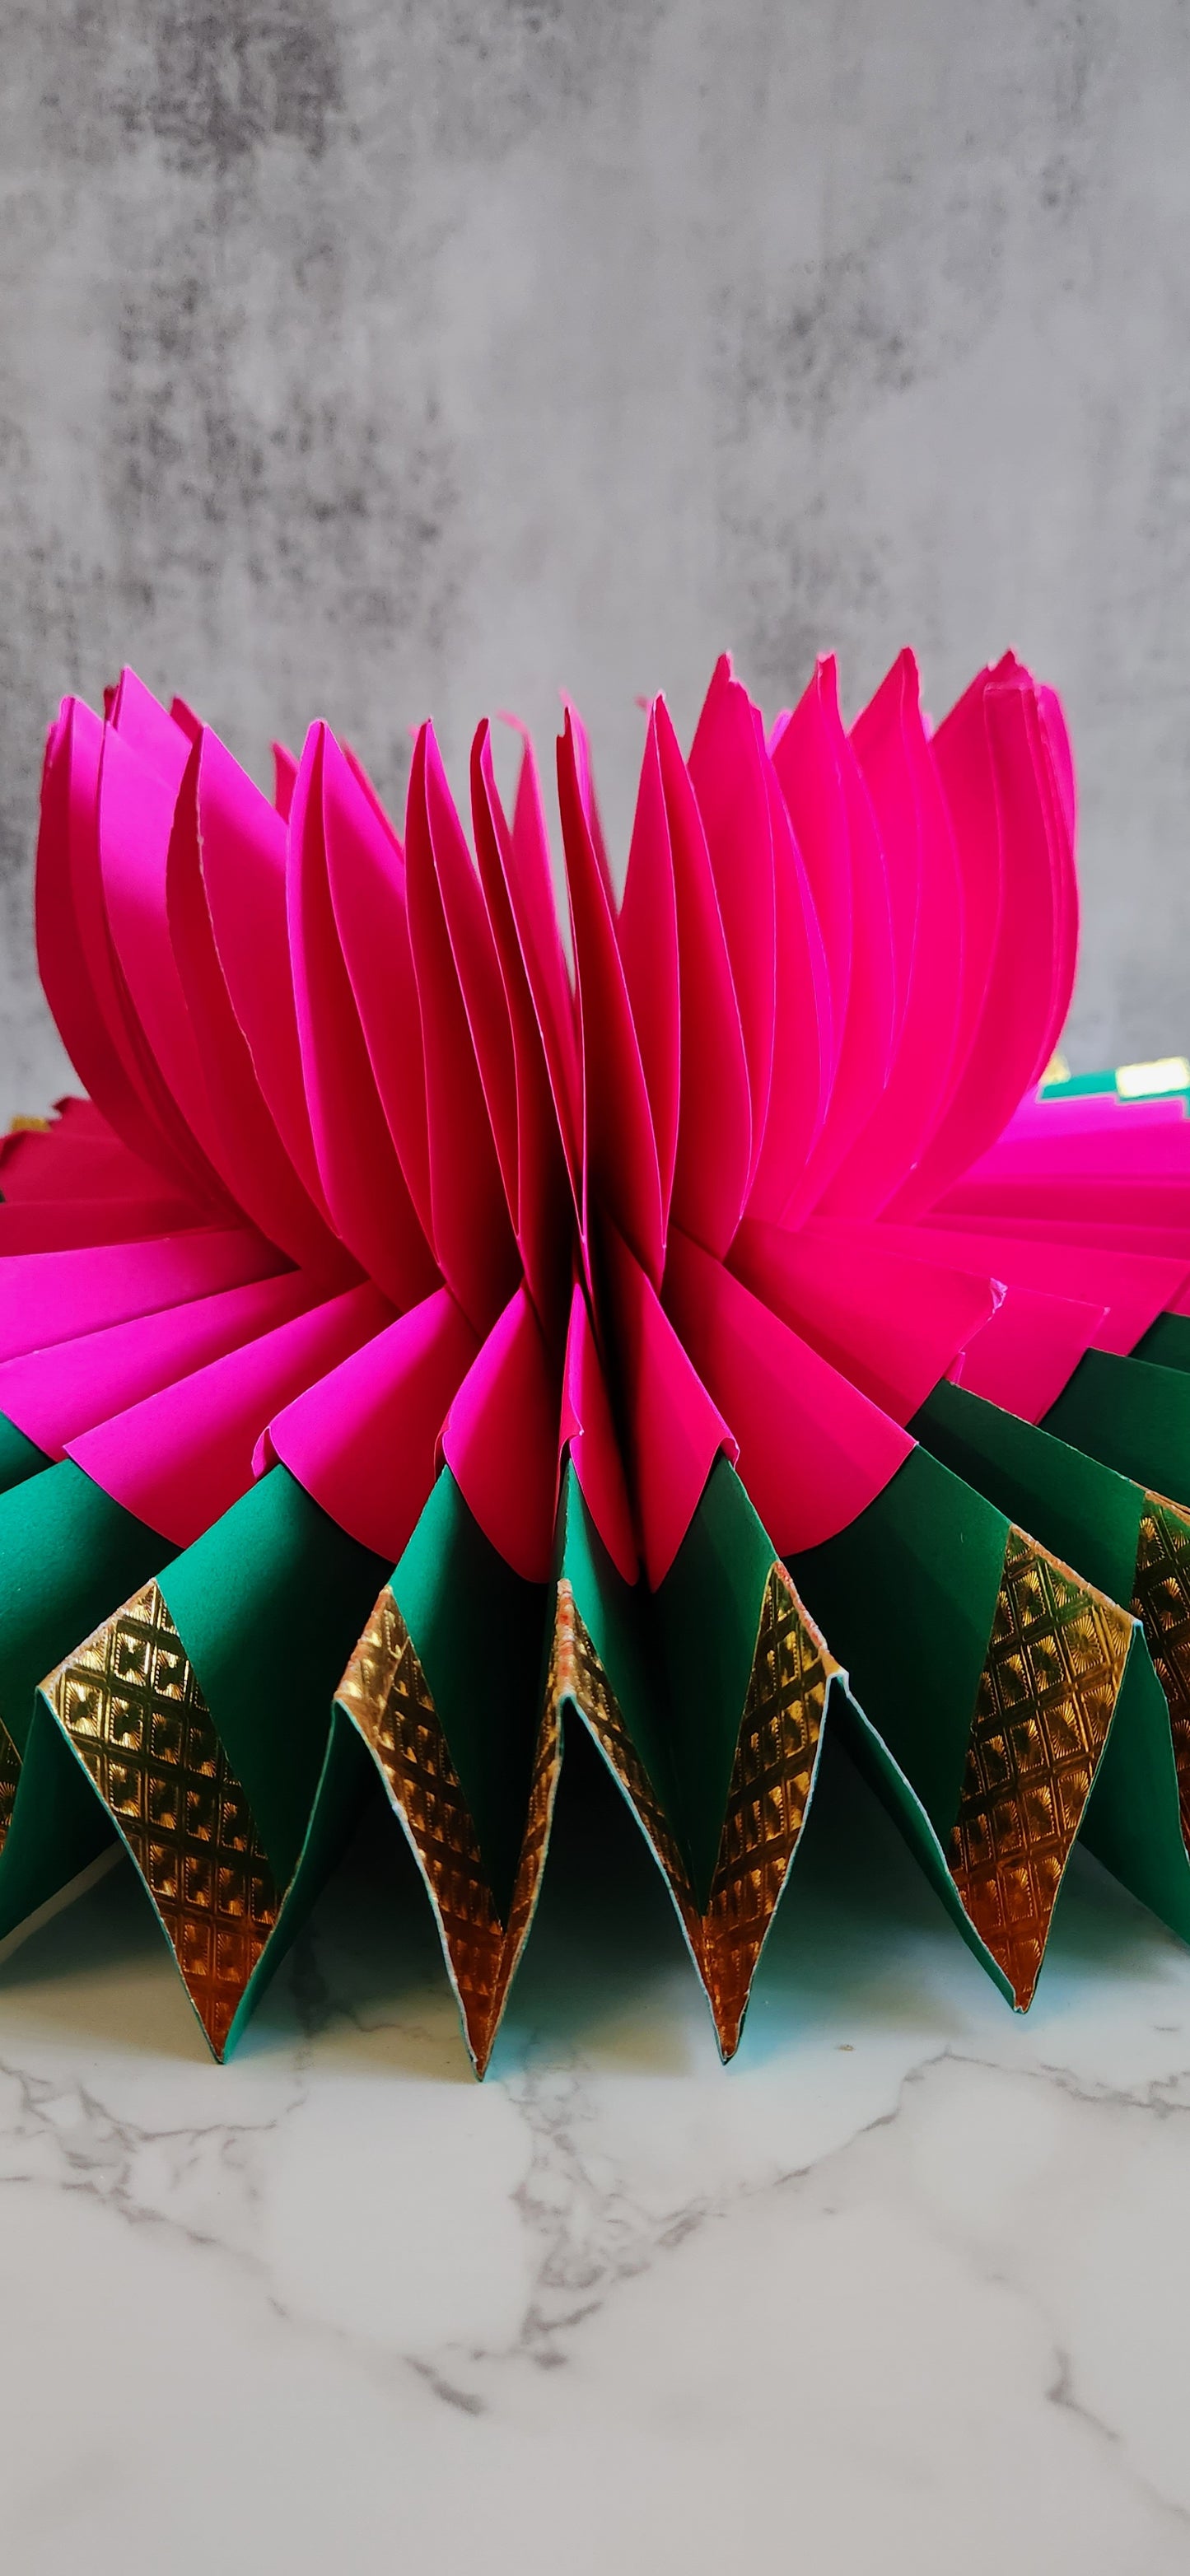 Paper Flower Asan - Pink - 17"